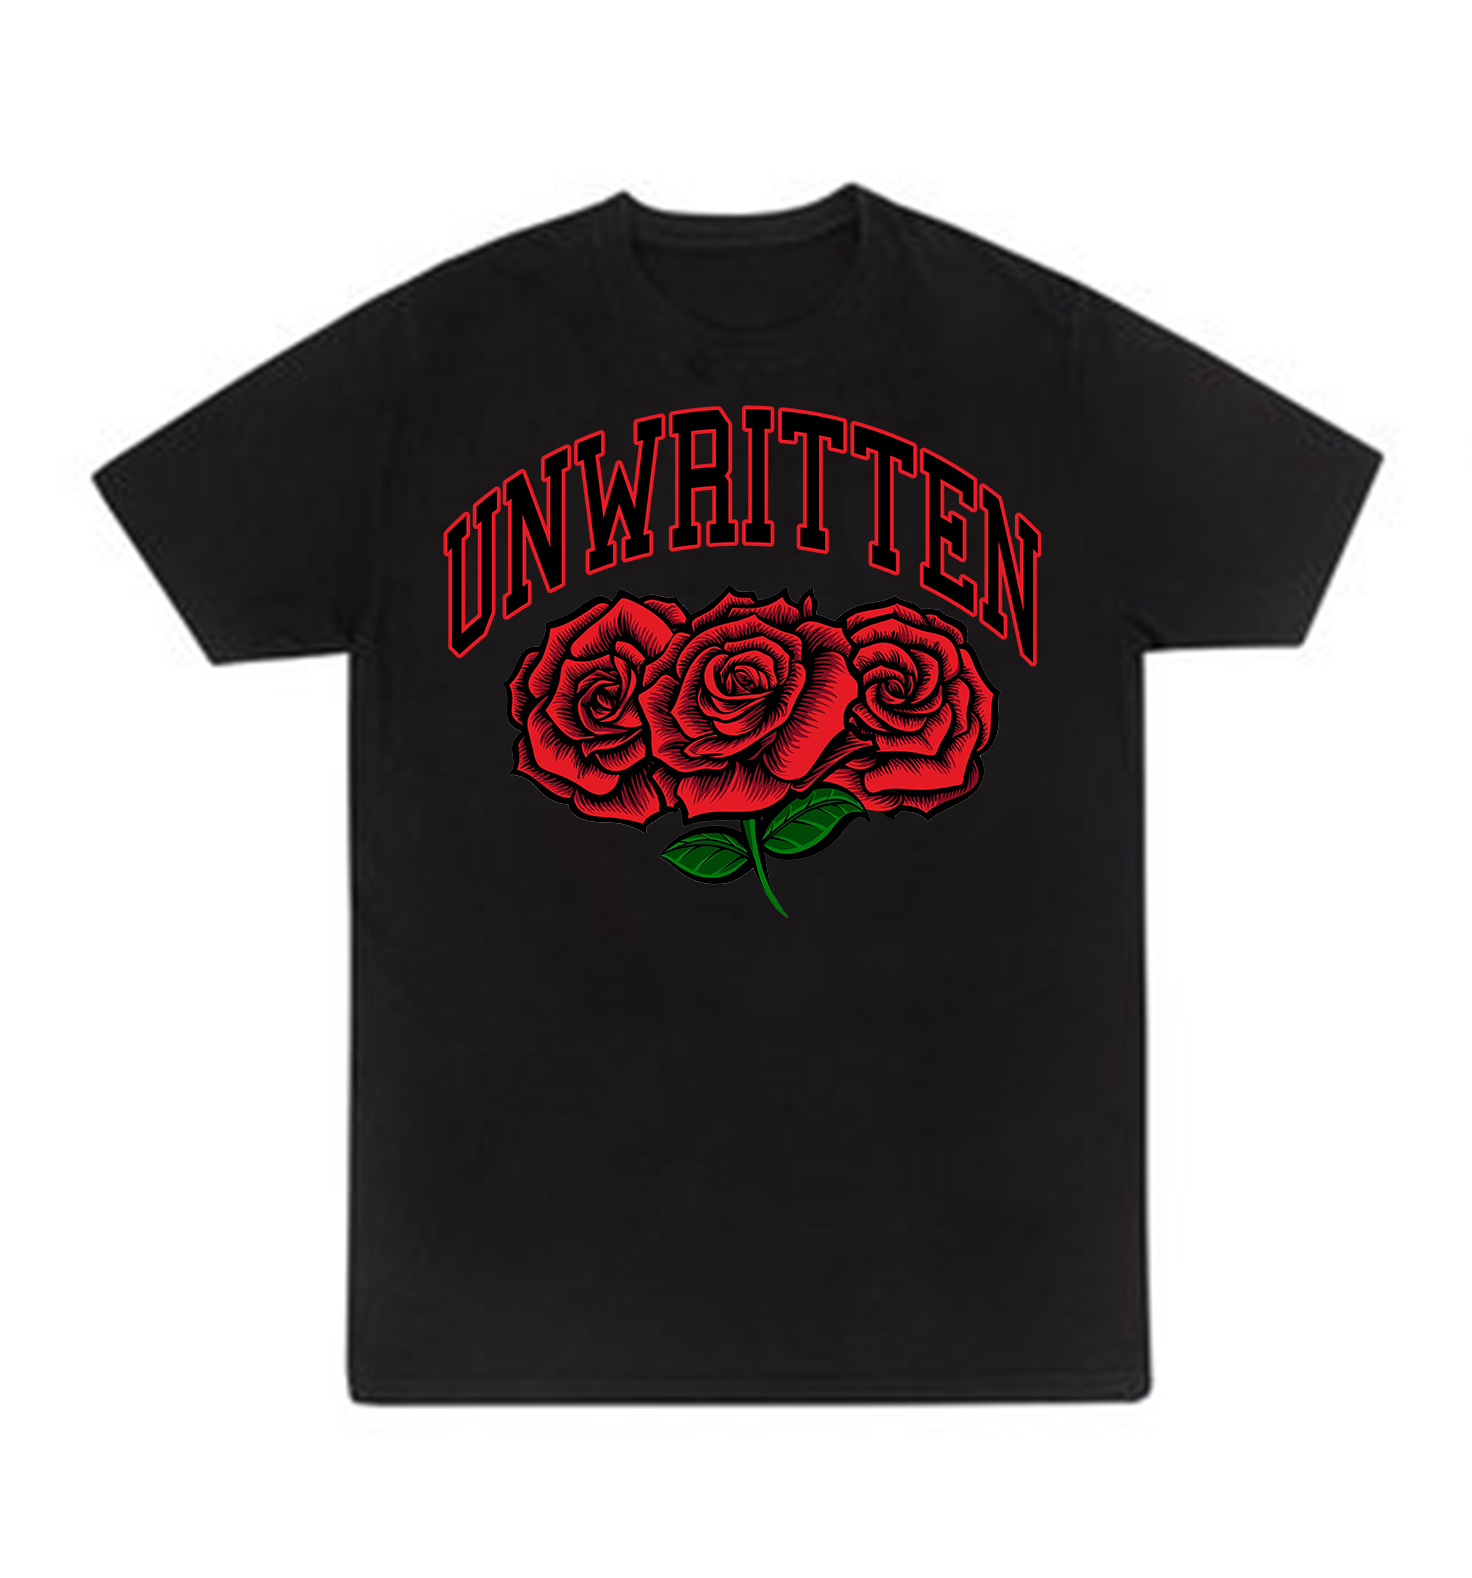 Rose Shirt – The Unwritten Brand